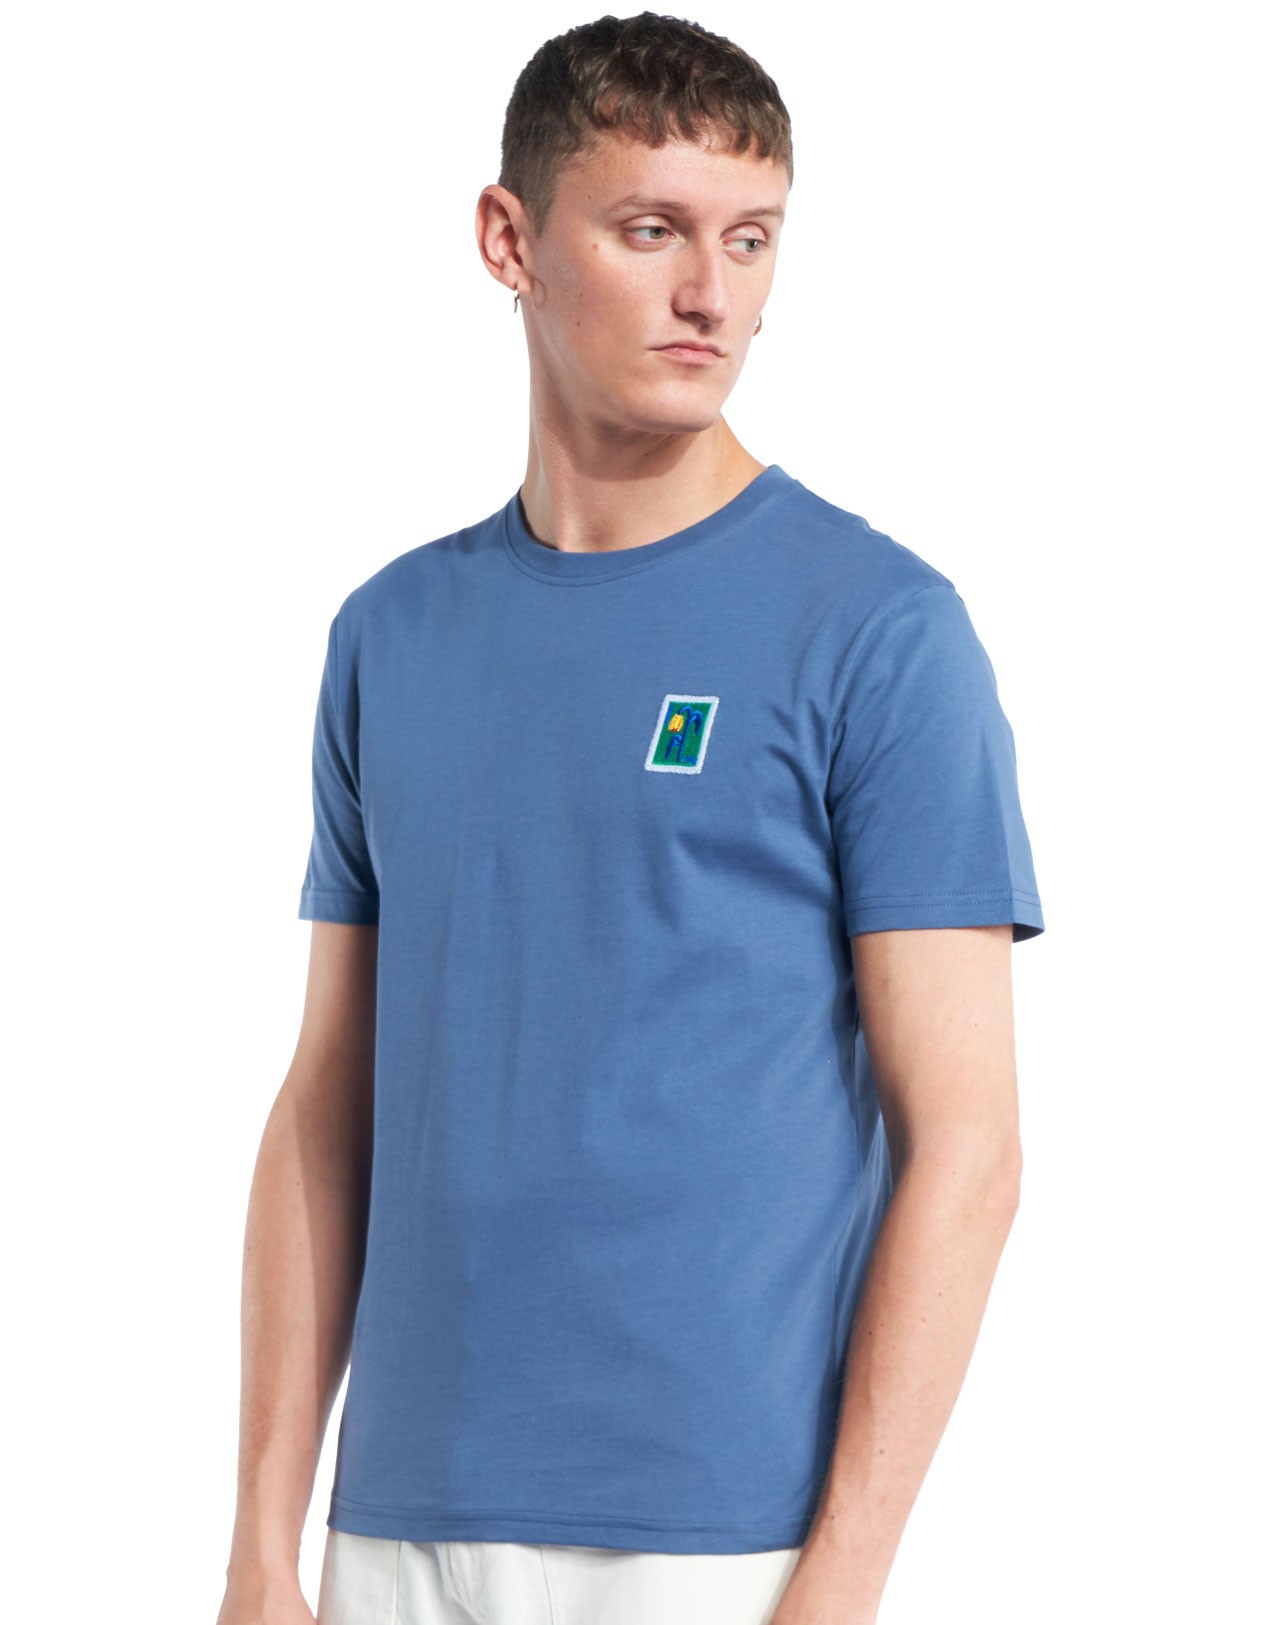 OLOW Olow - T-shirt Bleu Cobalt Brodé